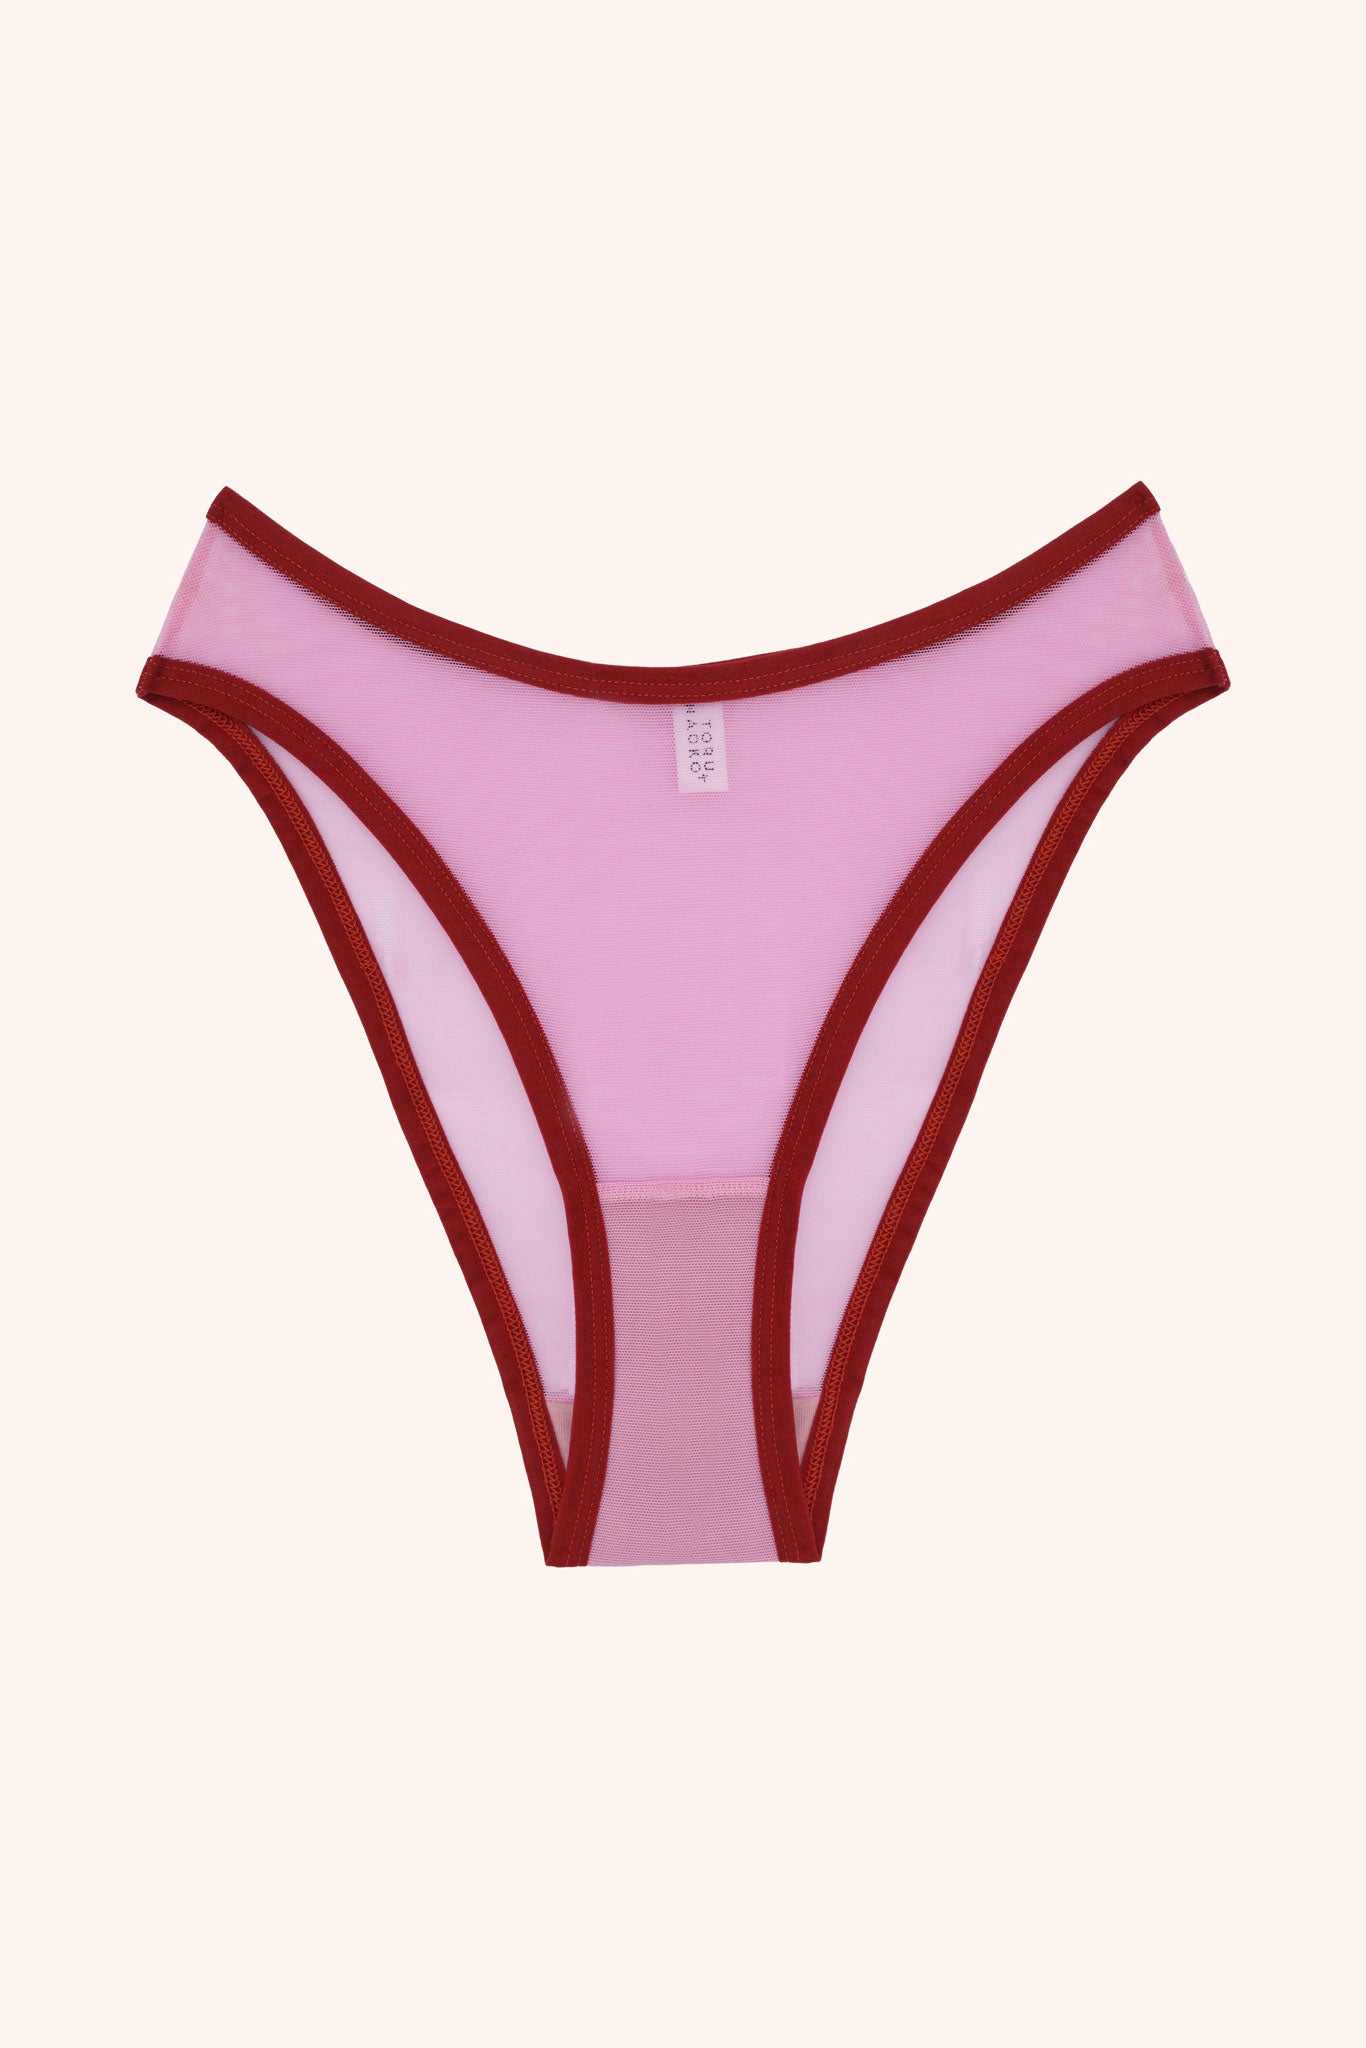 Kate high cut panties- carnation pink